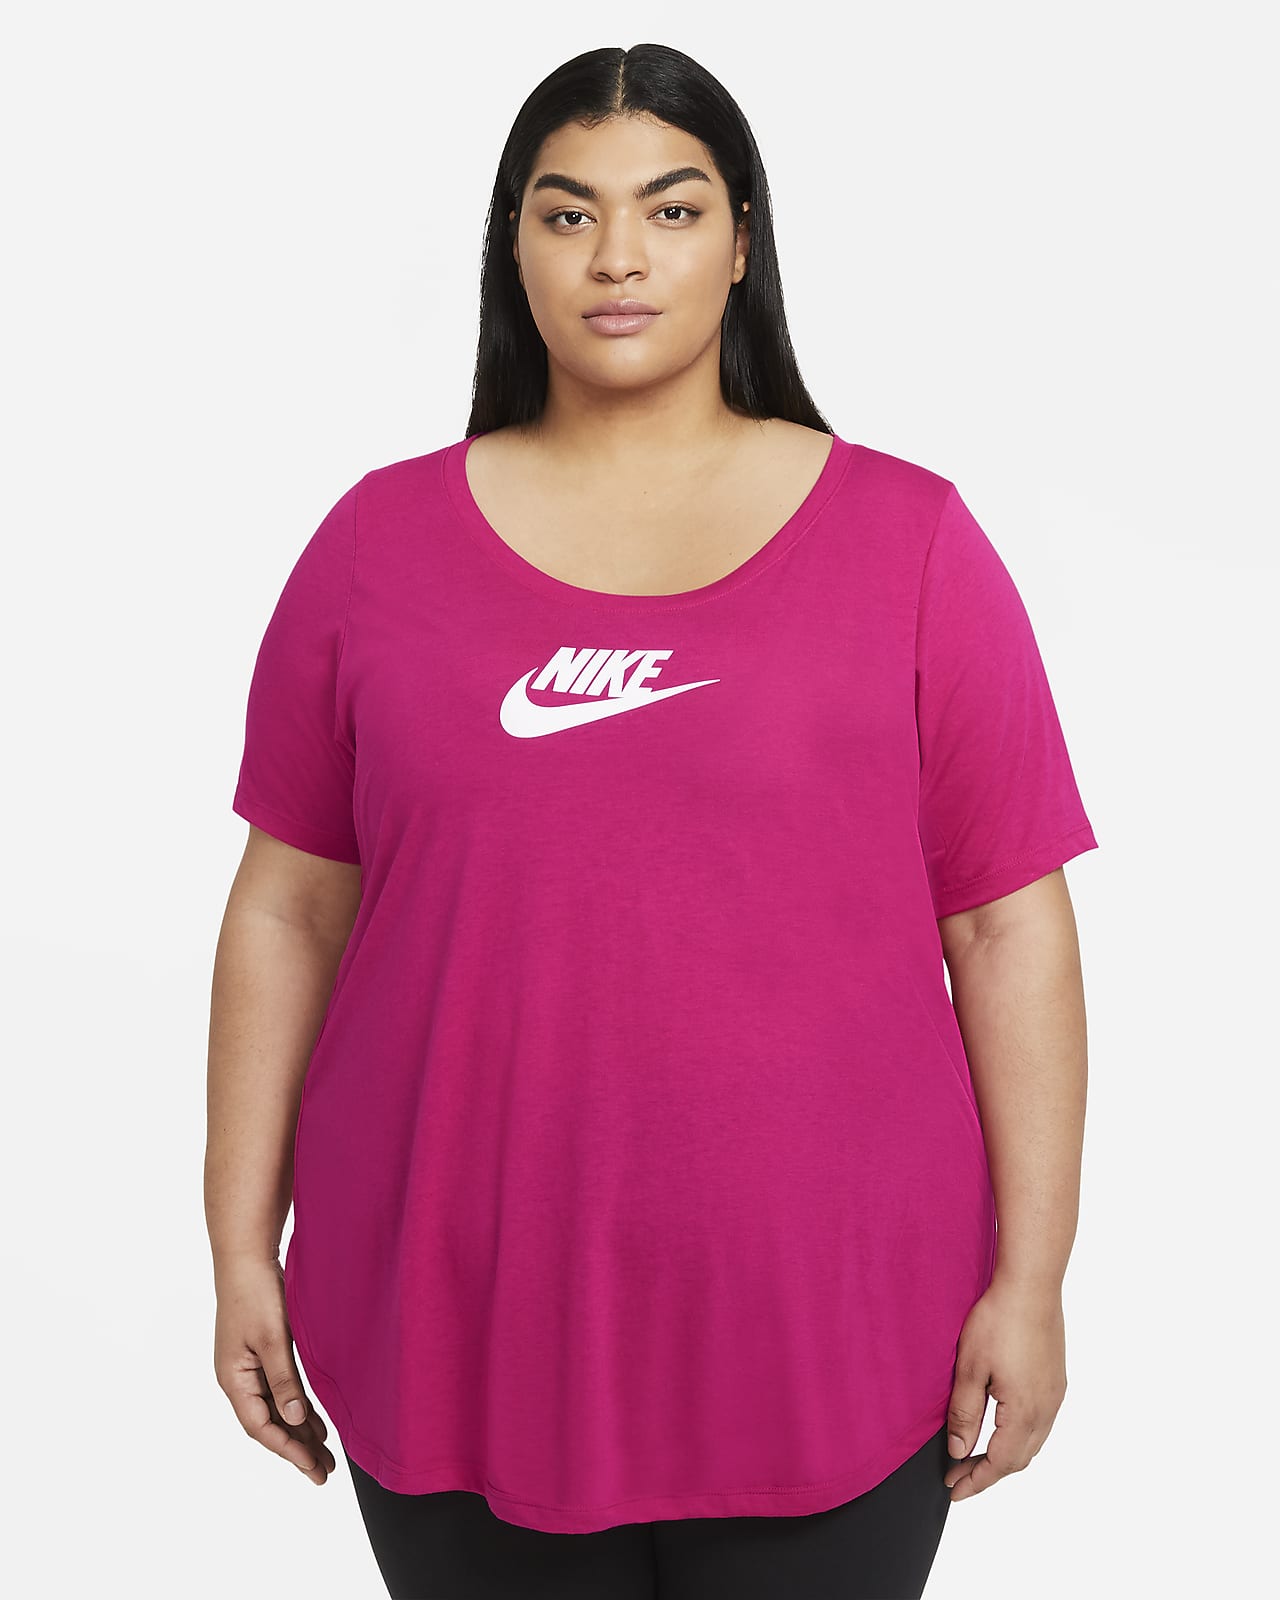 nike plus size women's apparel